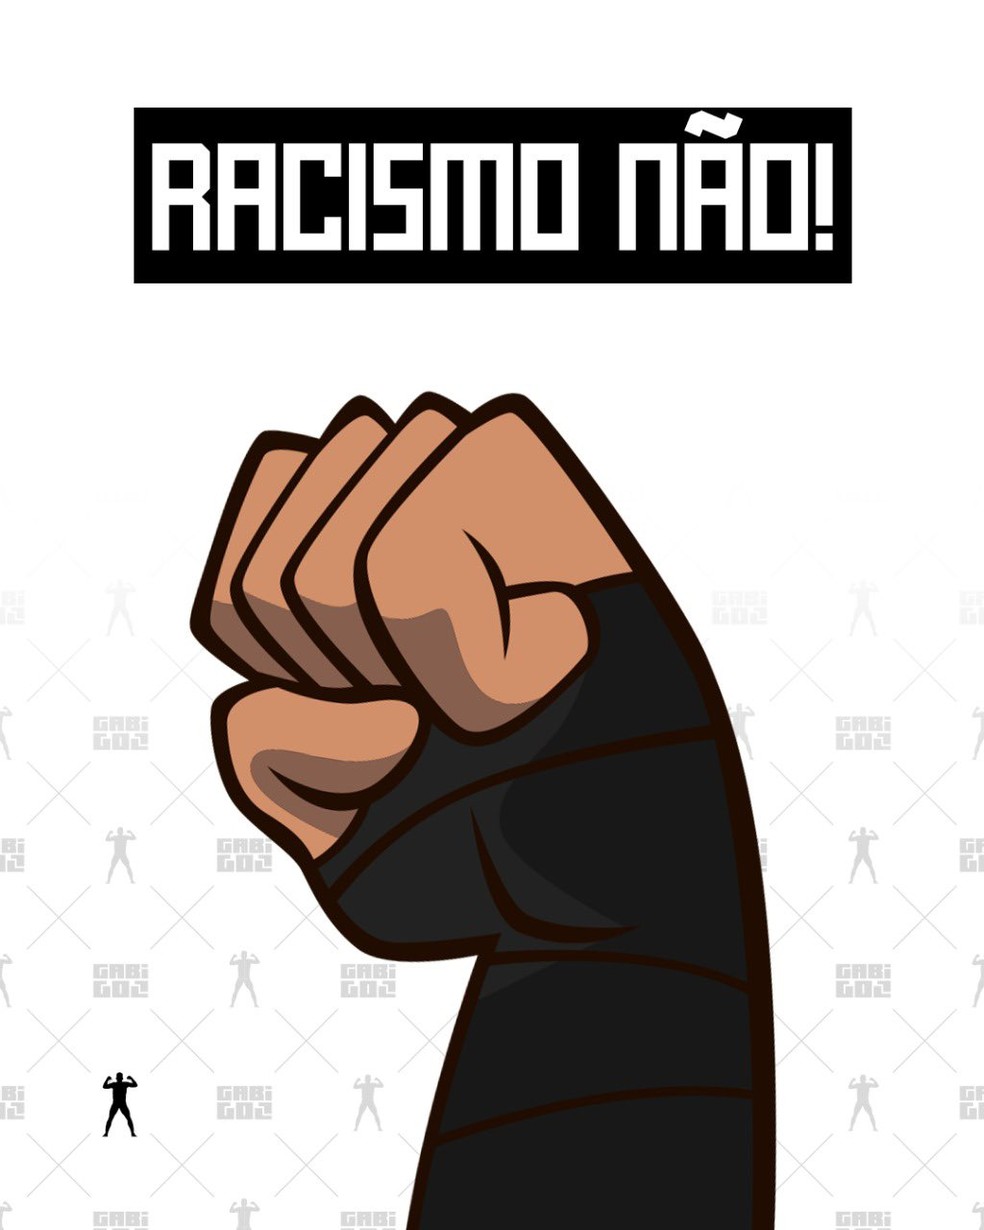 Racismo não!, grita Gabigol em suas redes sociais — Foto: Divulgação/Gabigol store